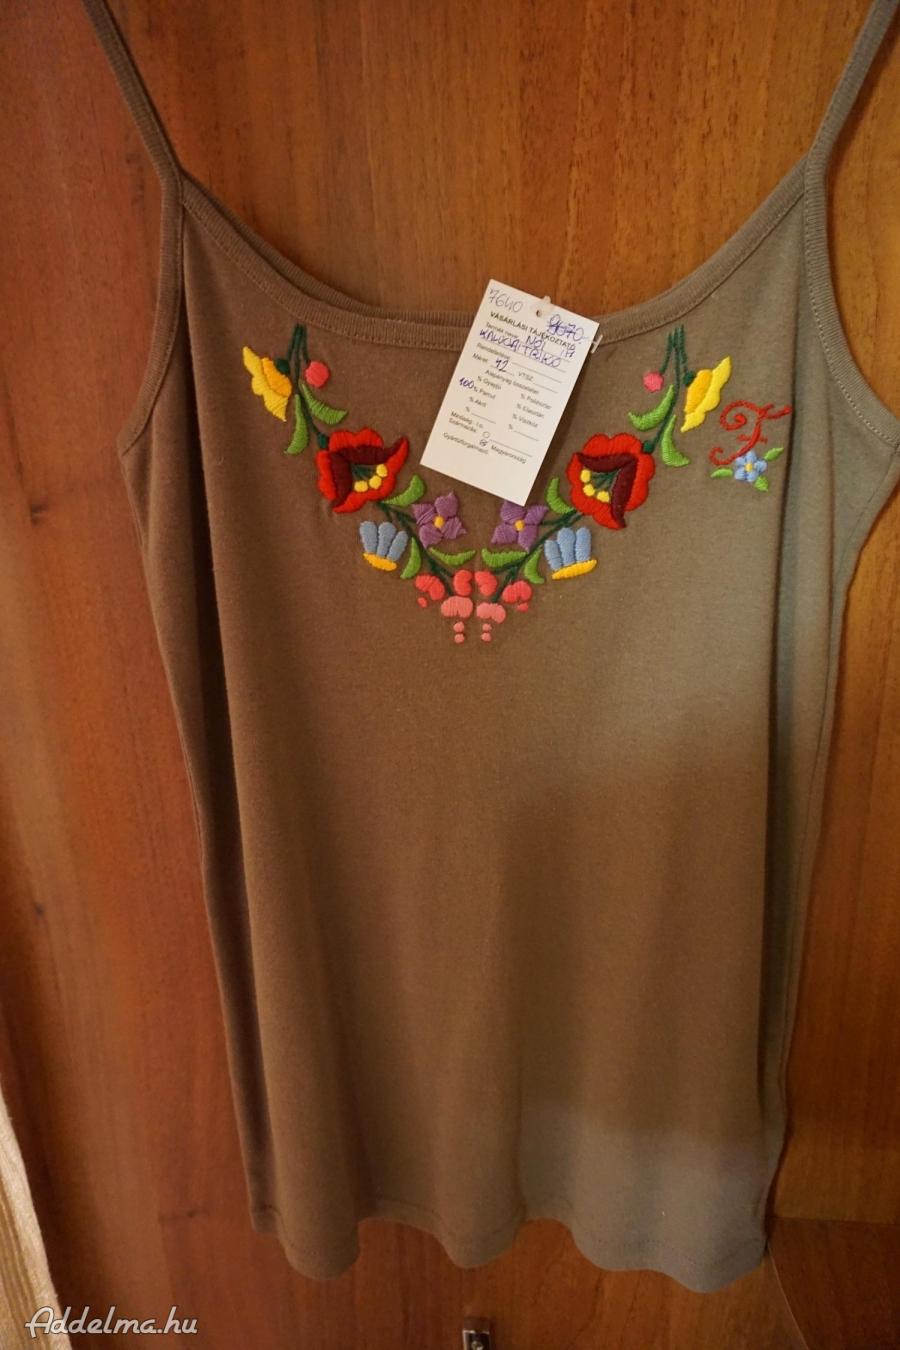 Kalocsai színes népművész hímzéssel drapp női trikó eladó.